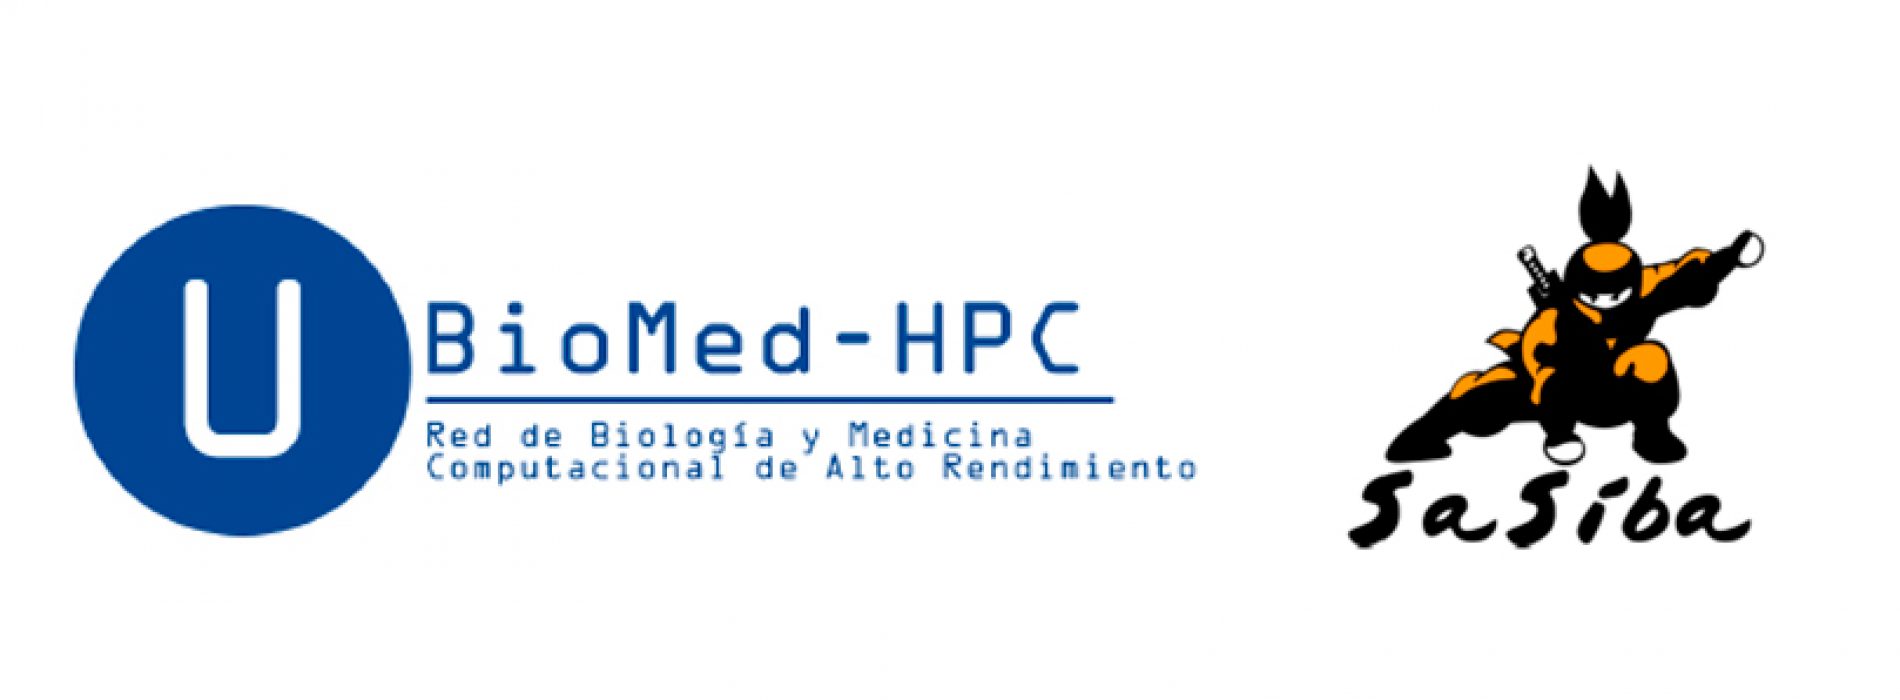 Invitación Cierre U-Redes: BioMed-HPC e Inauguración Sasiba – 08.05.18 – 16:00 horas